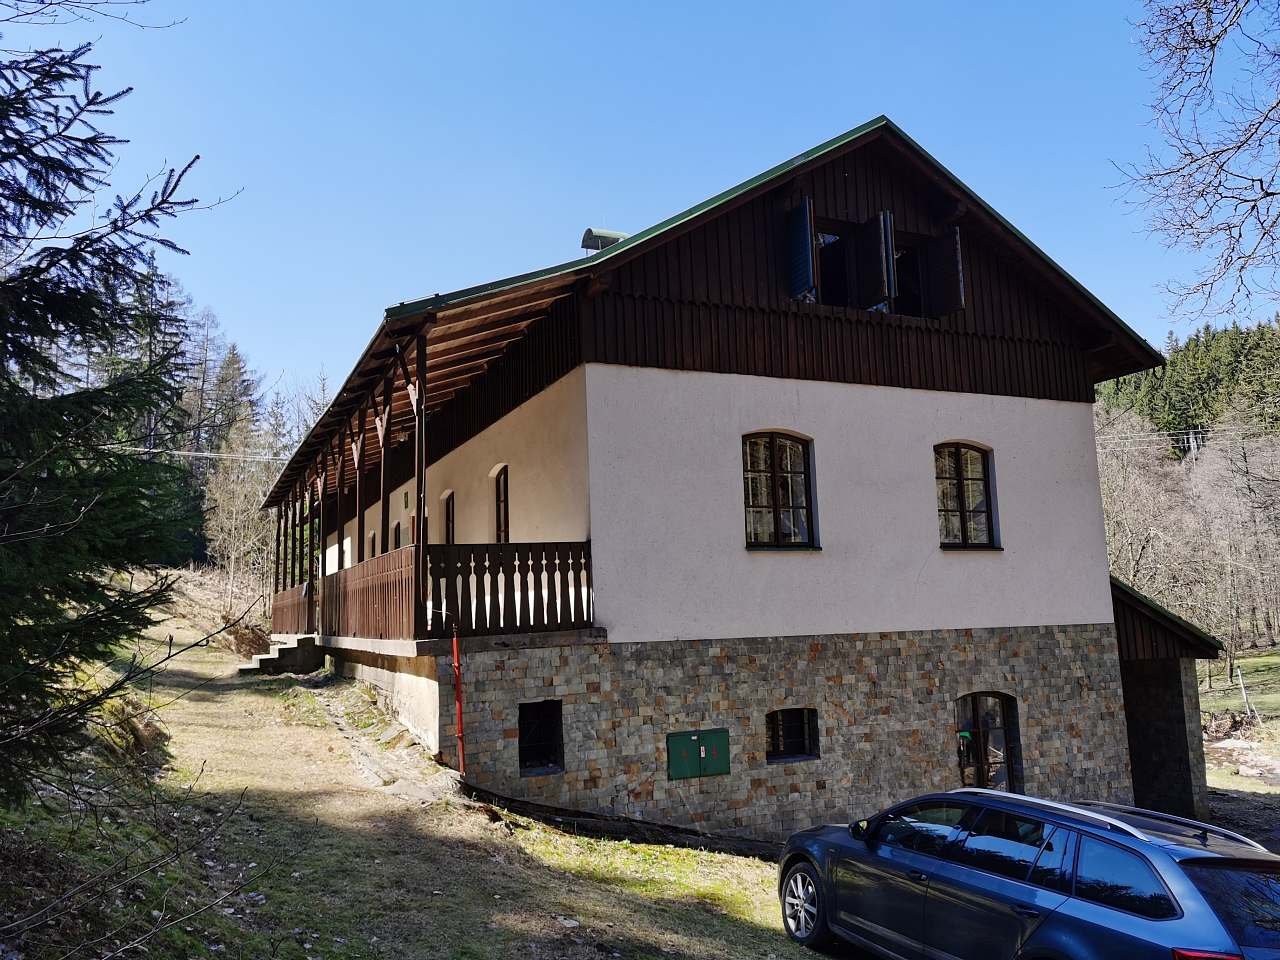 Hořická cottage near Černý Dol